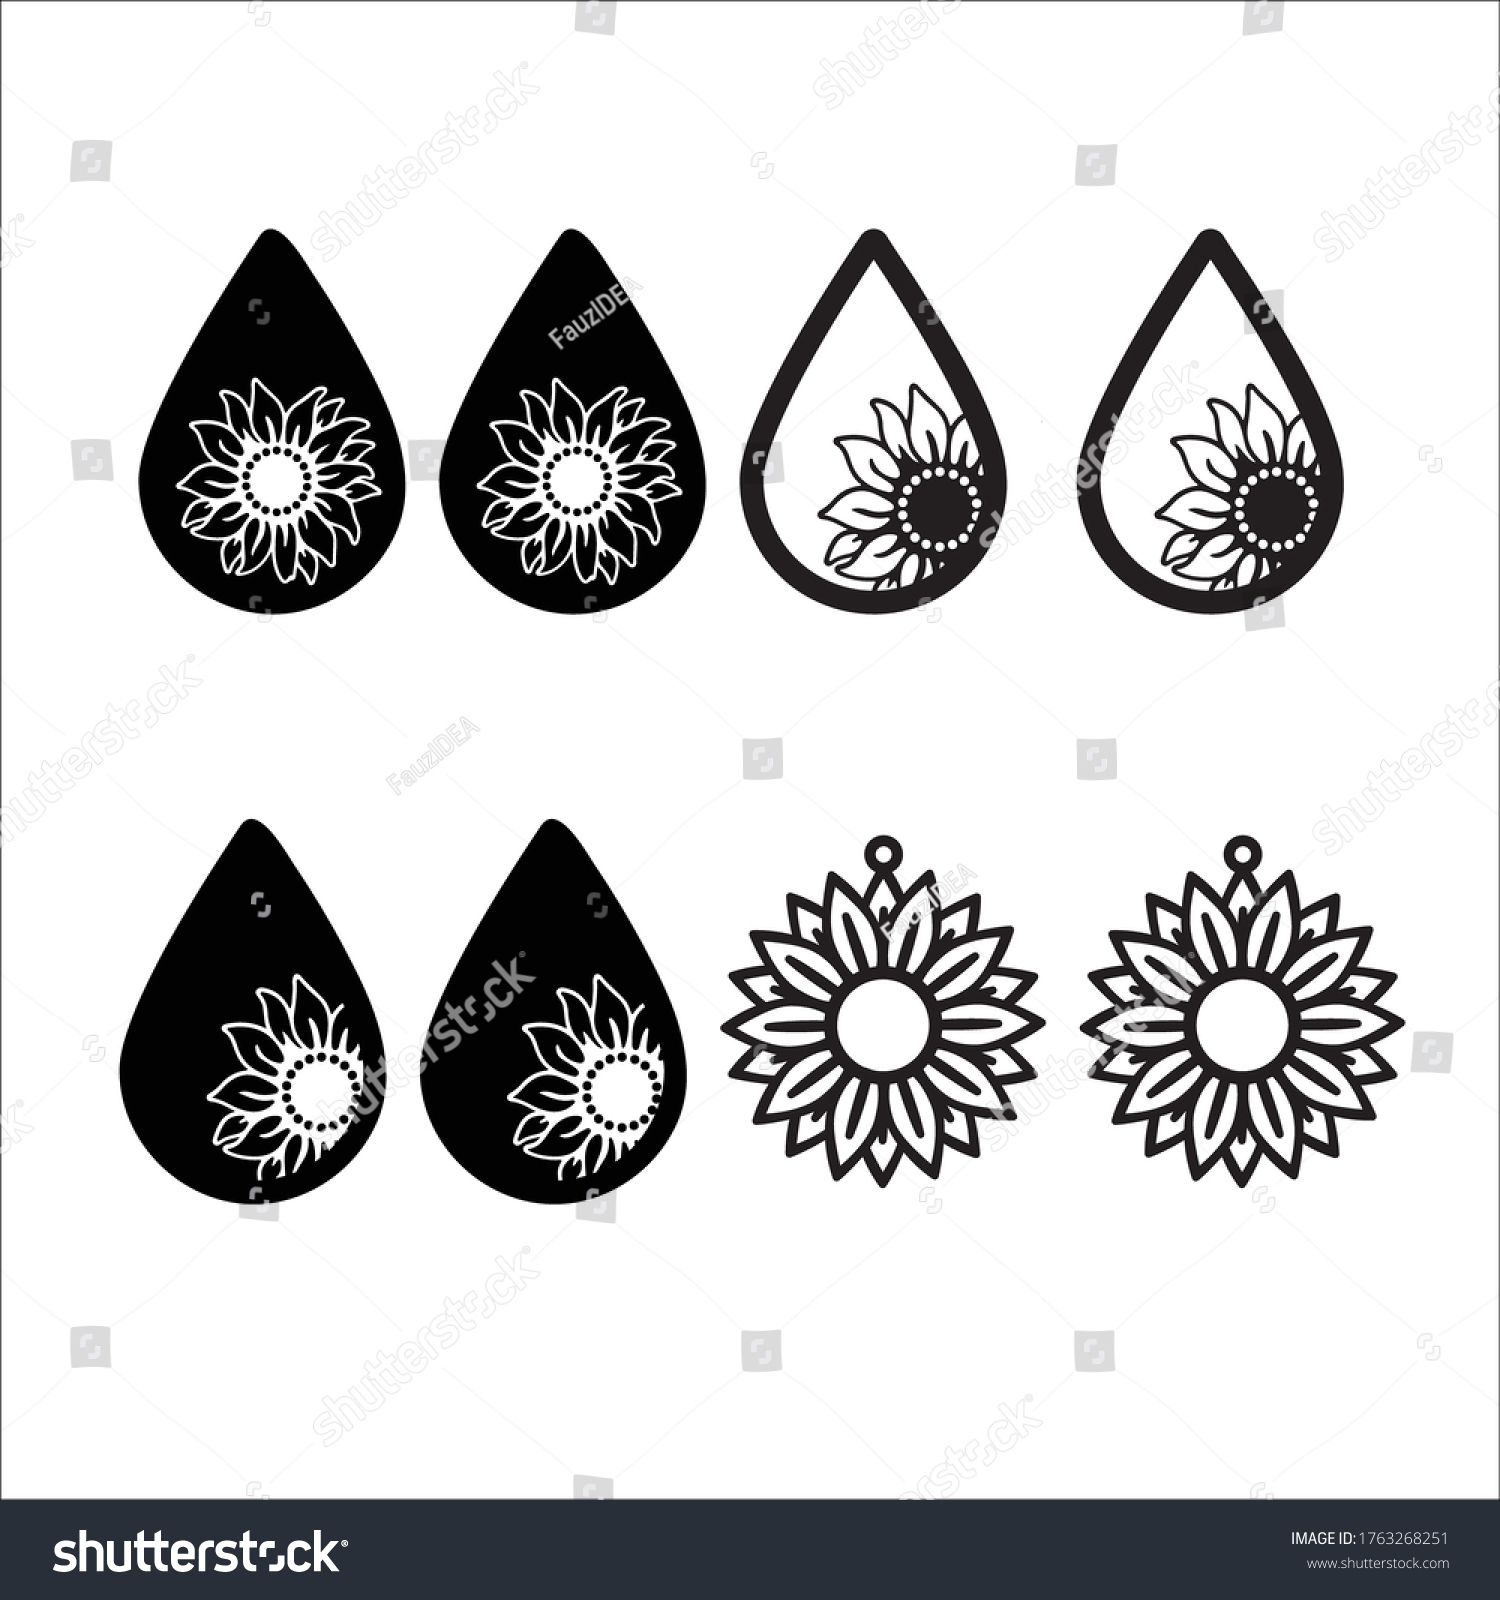 SVG of Sun flower earrings vector style illustration design on white background eps.10 svg